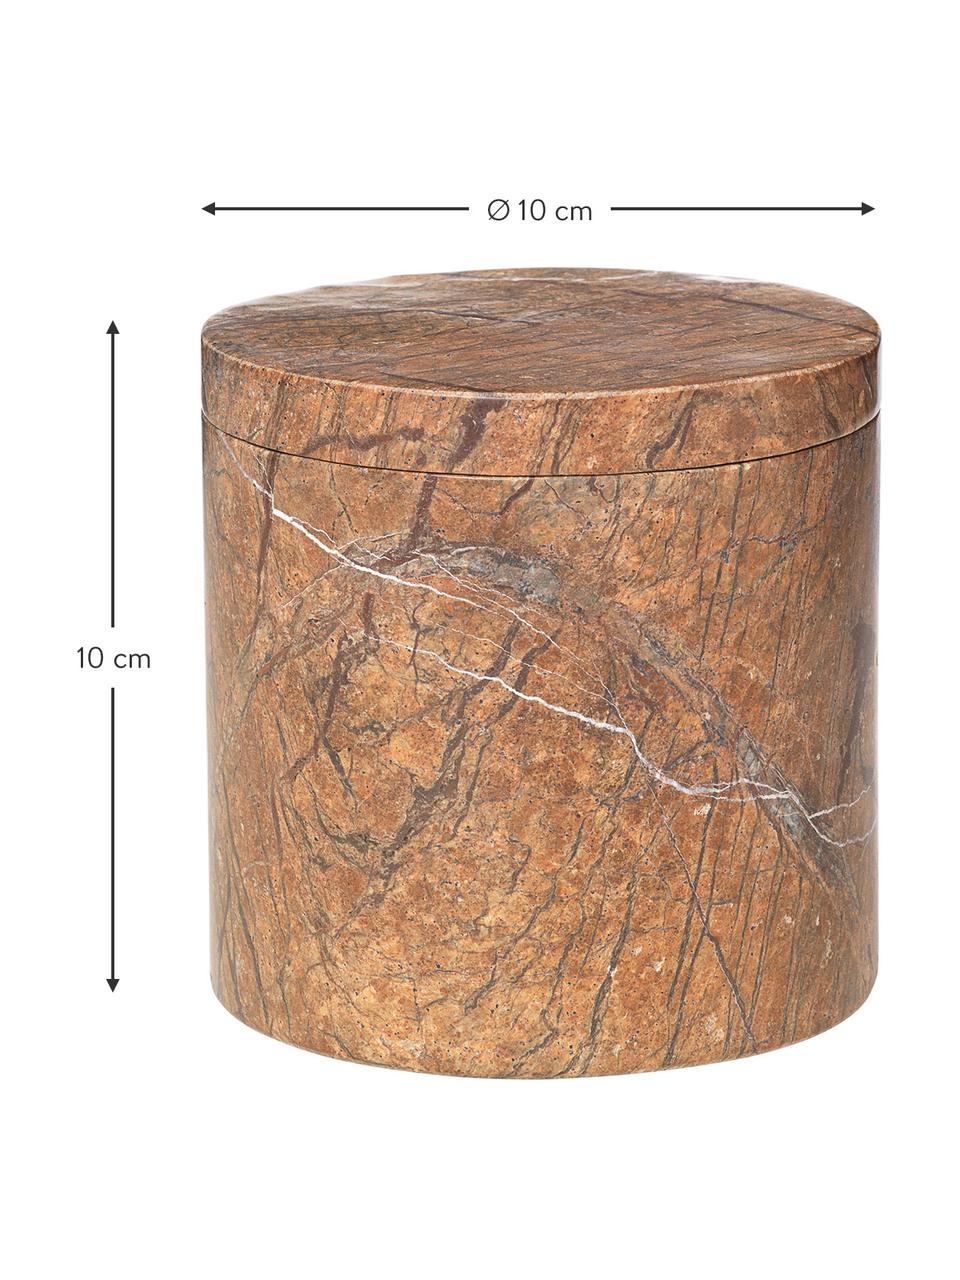 Boîte de rangement marbre brun Osvald, Marbre

Le marbre est une pierre naturelle dont la veinure est unique. Chaque exemplaire de ce produit est donc unique, Marbre brun, Ø 10 x haut. 10 cm